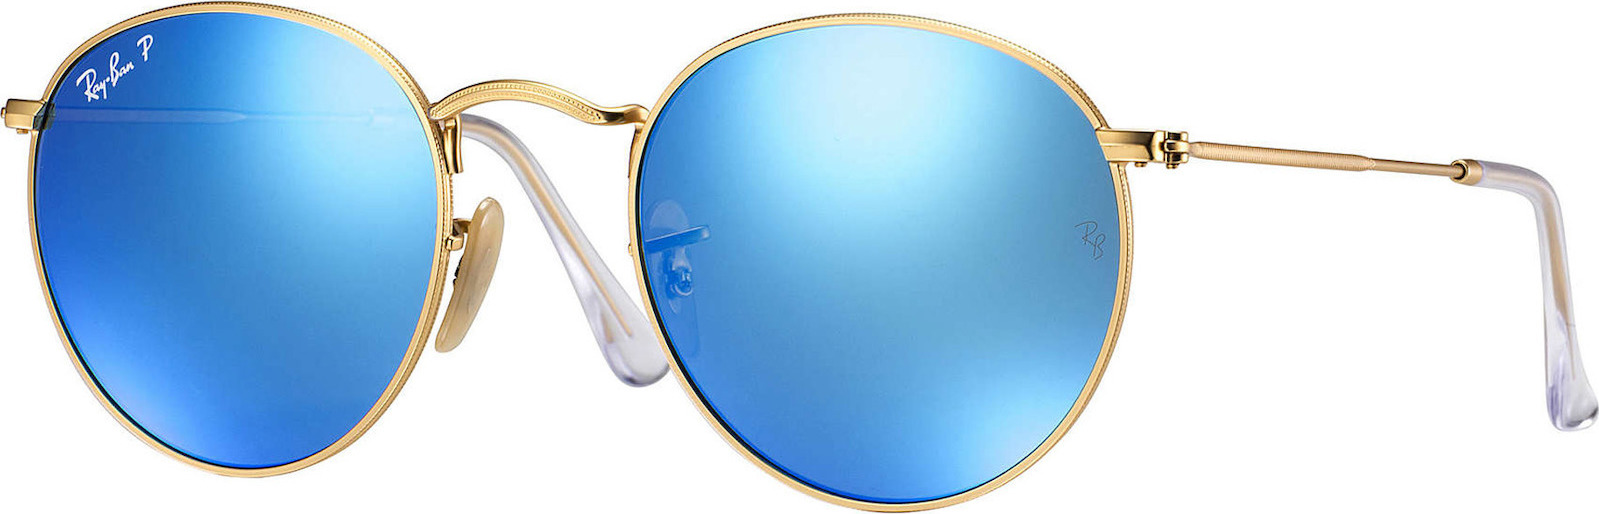 Ray Ban Round Metal Γυαλιά Ηλίου με Χρυσό Μεταλλικό Σκελετό και Μπλε  Polarized Καθρέφτη Φακό RB3447 112/4L